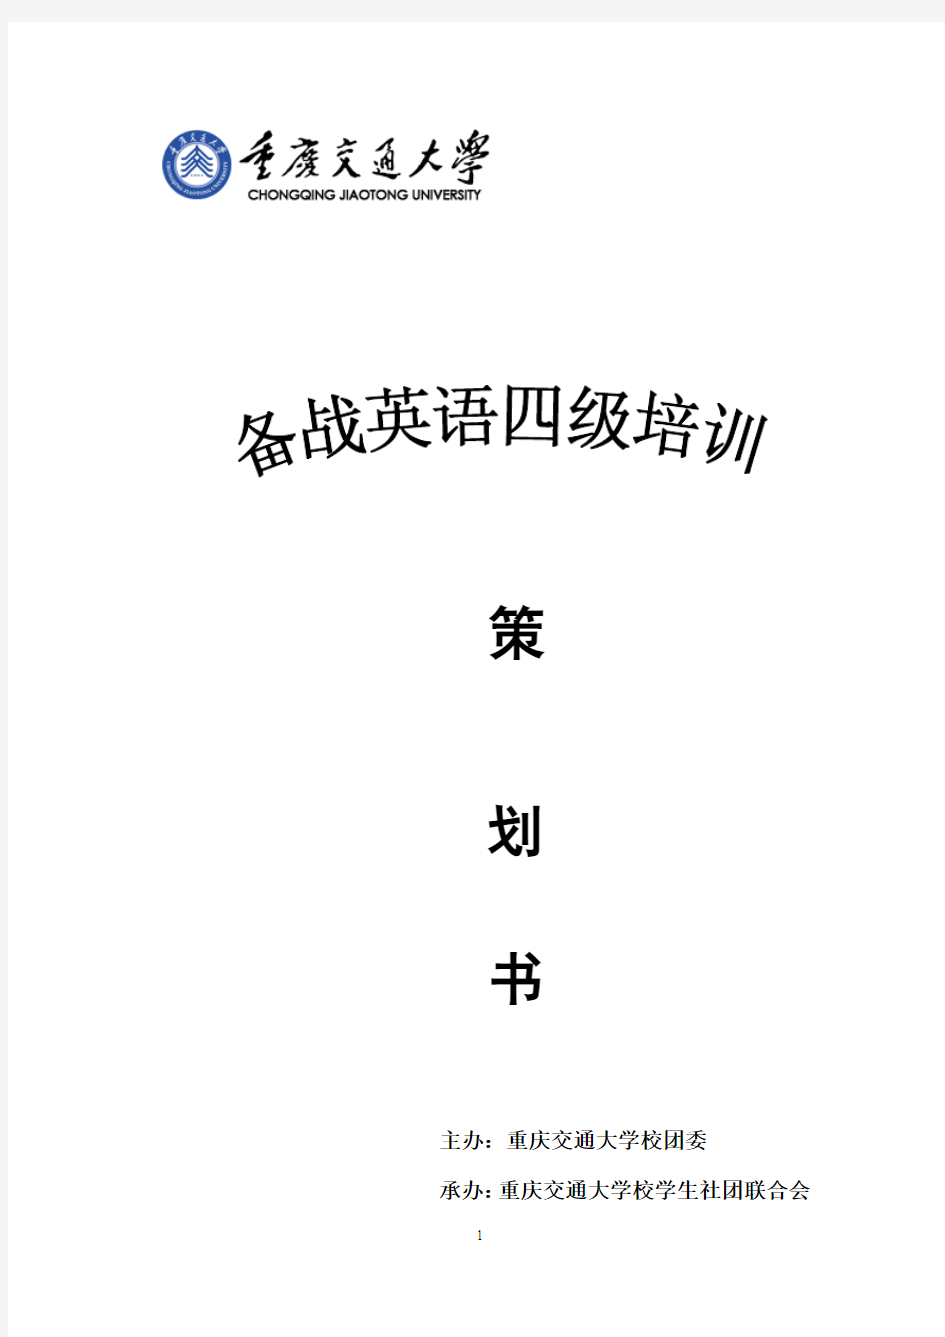 重庆交通大学英语四级讲座策划书